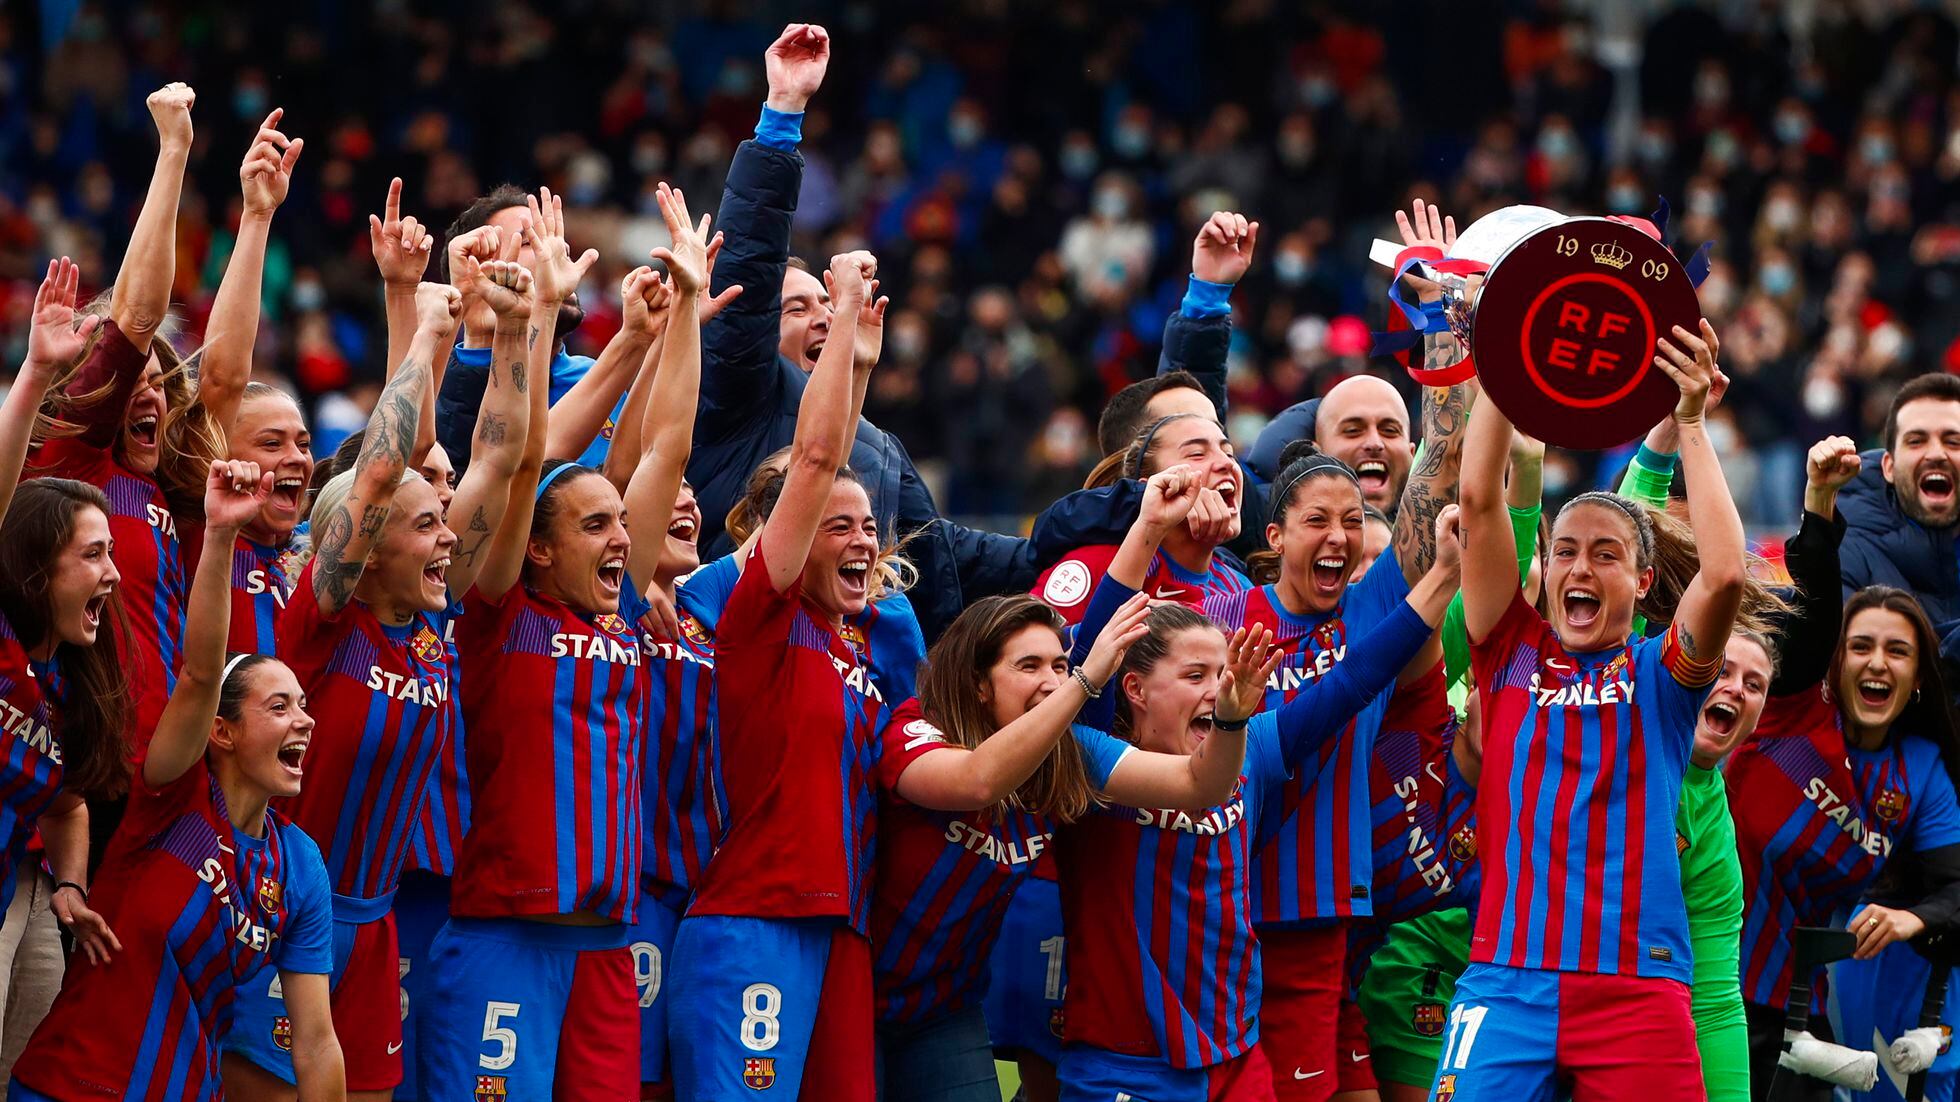 Cómo está compuesta la plantilla de Barcelona Femenino y quienes son sus mejores jugadoras